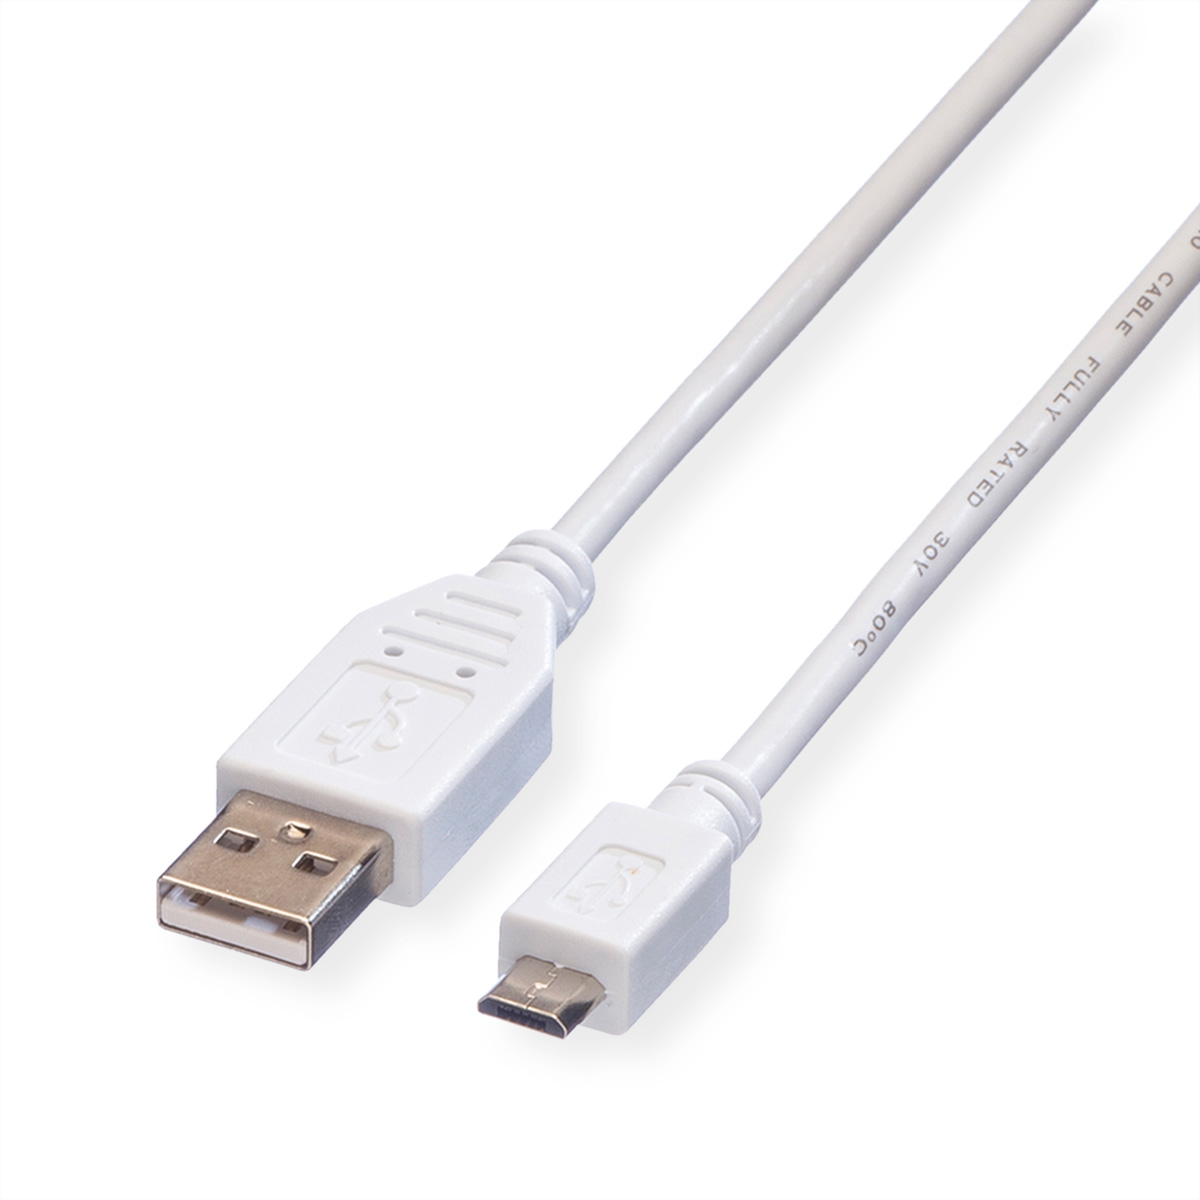 Kabel Kabel USB VALUE Micro 2.0 2.0 USB